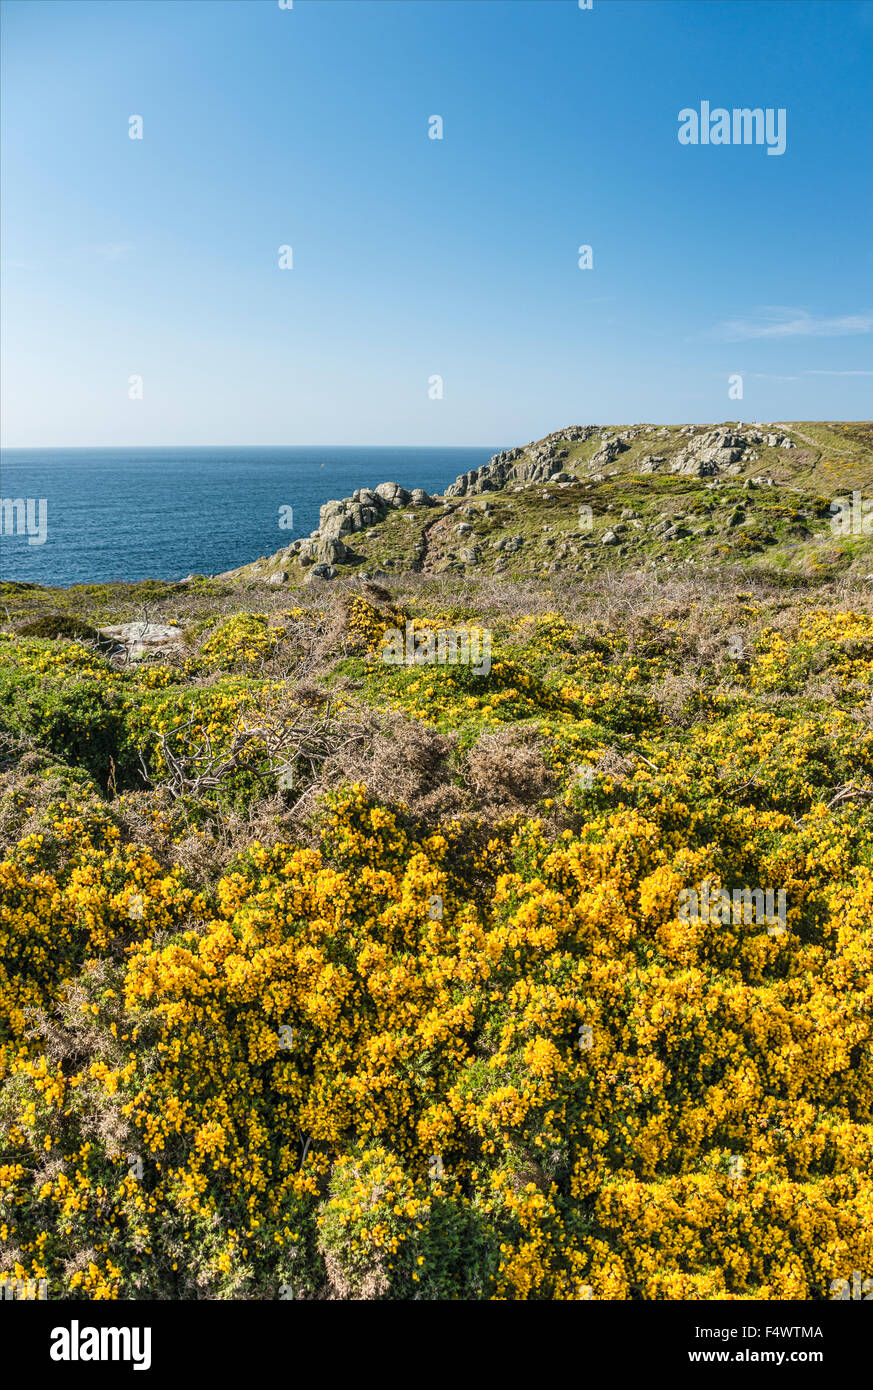 La Gorse jaune fleurit dans un paysage côtier pittoresque à Lands End, Cornwall, Angleterre, Royaume-Uni Banque D'Images